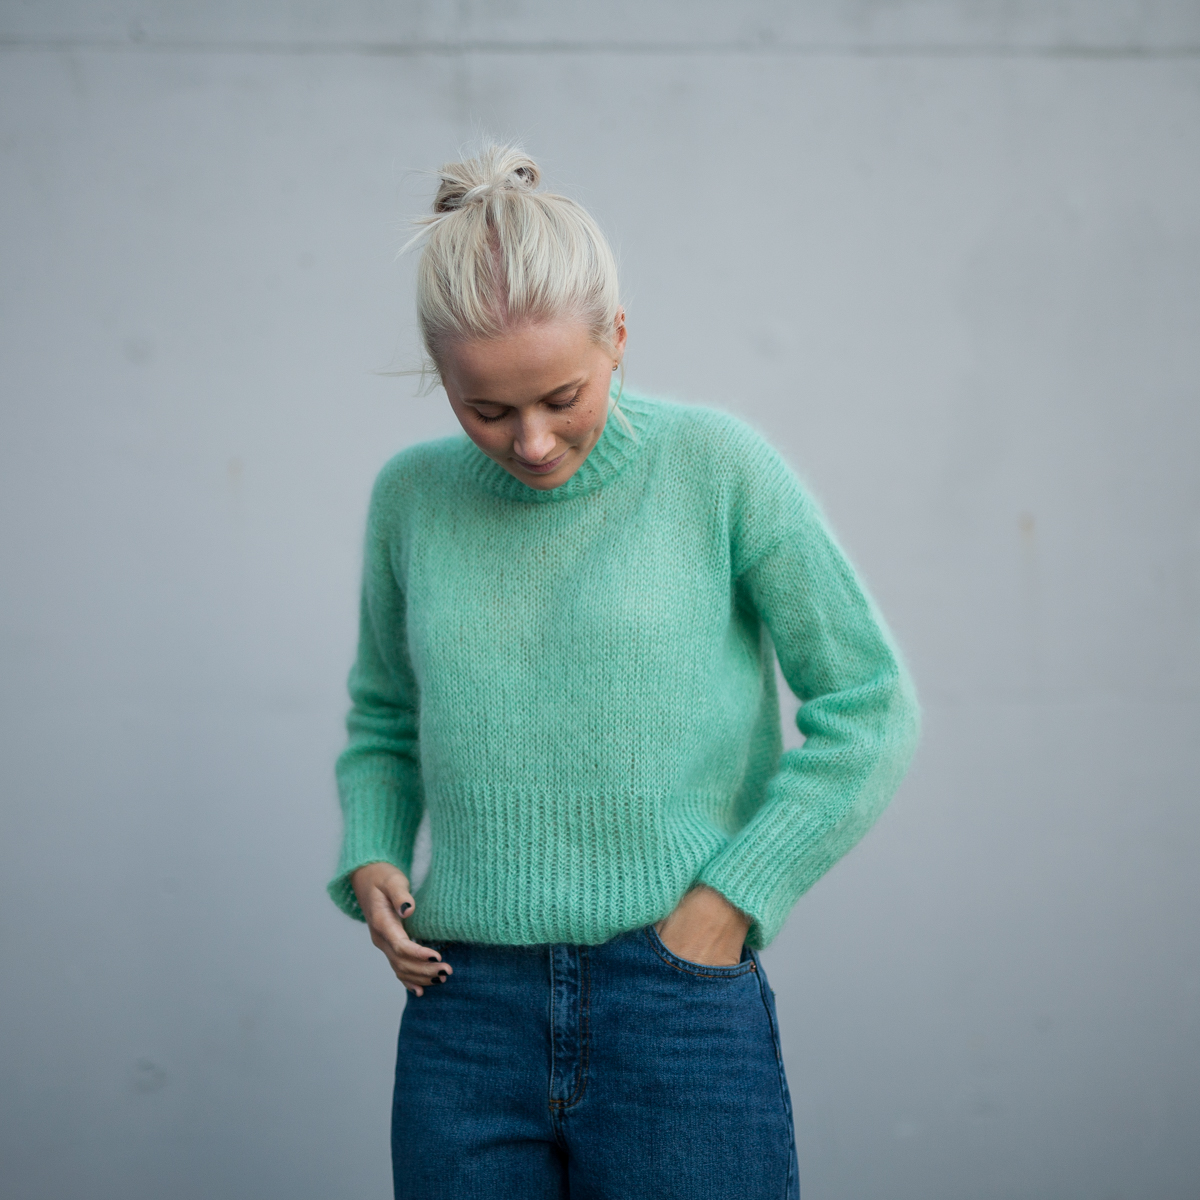  - Elvira Sweater | Turtleneck sweater women knitting kit - by HipKnitShop - 03/09/2018